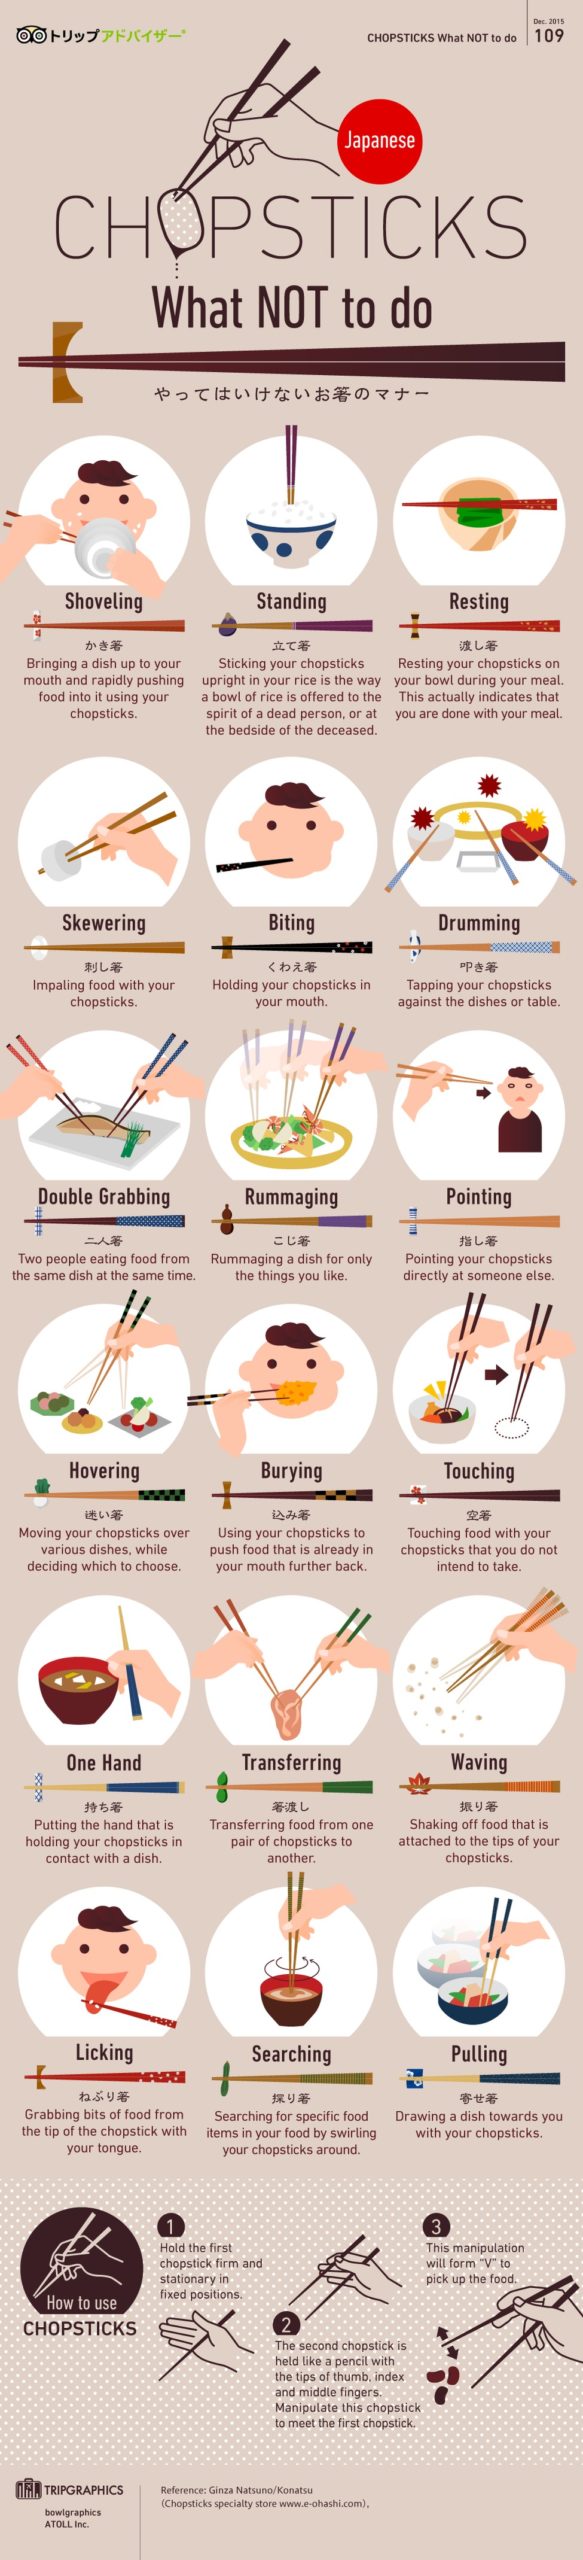 箸の正しい持ち方とマナー 箸食文化は世界の3割を占める インフォグラフィック